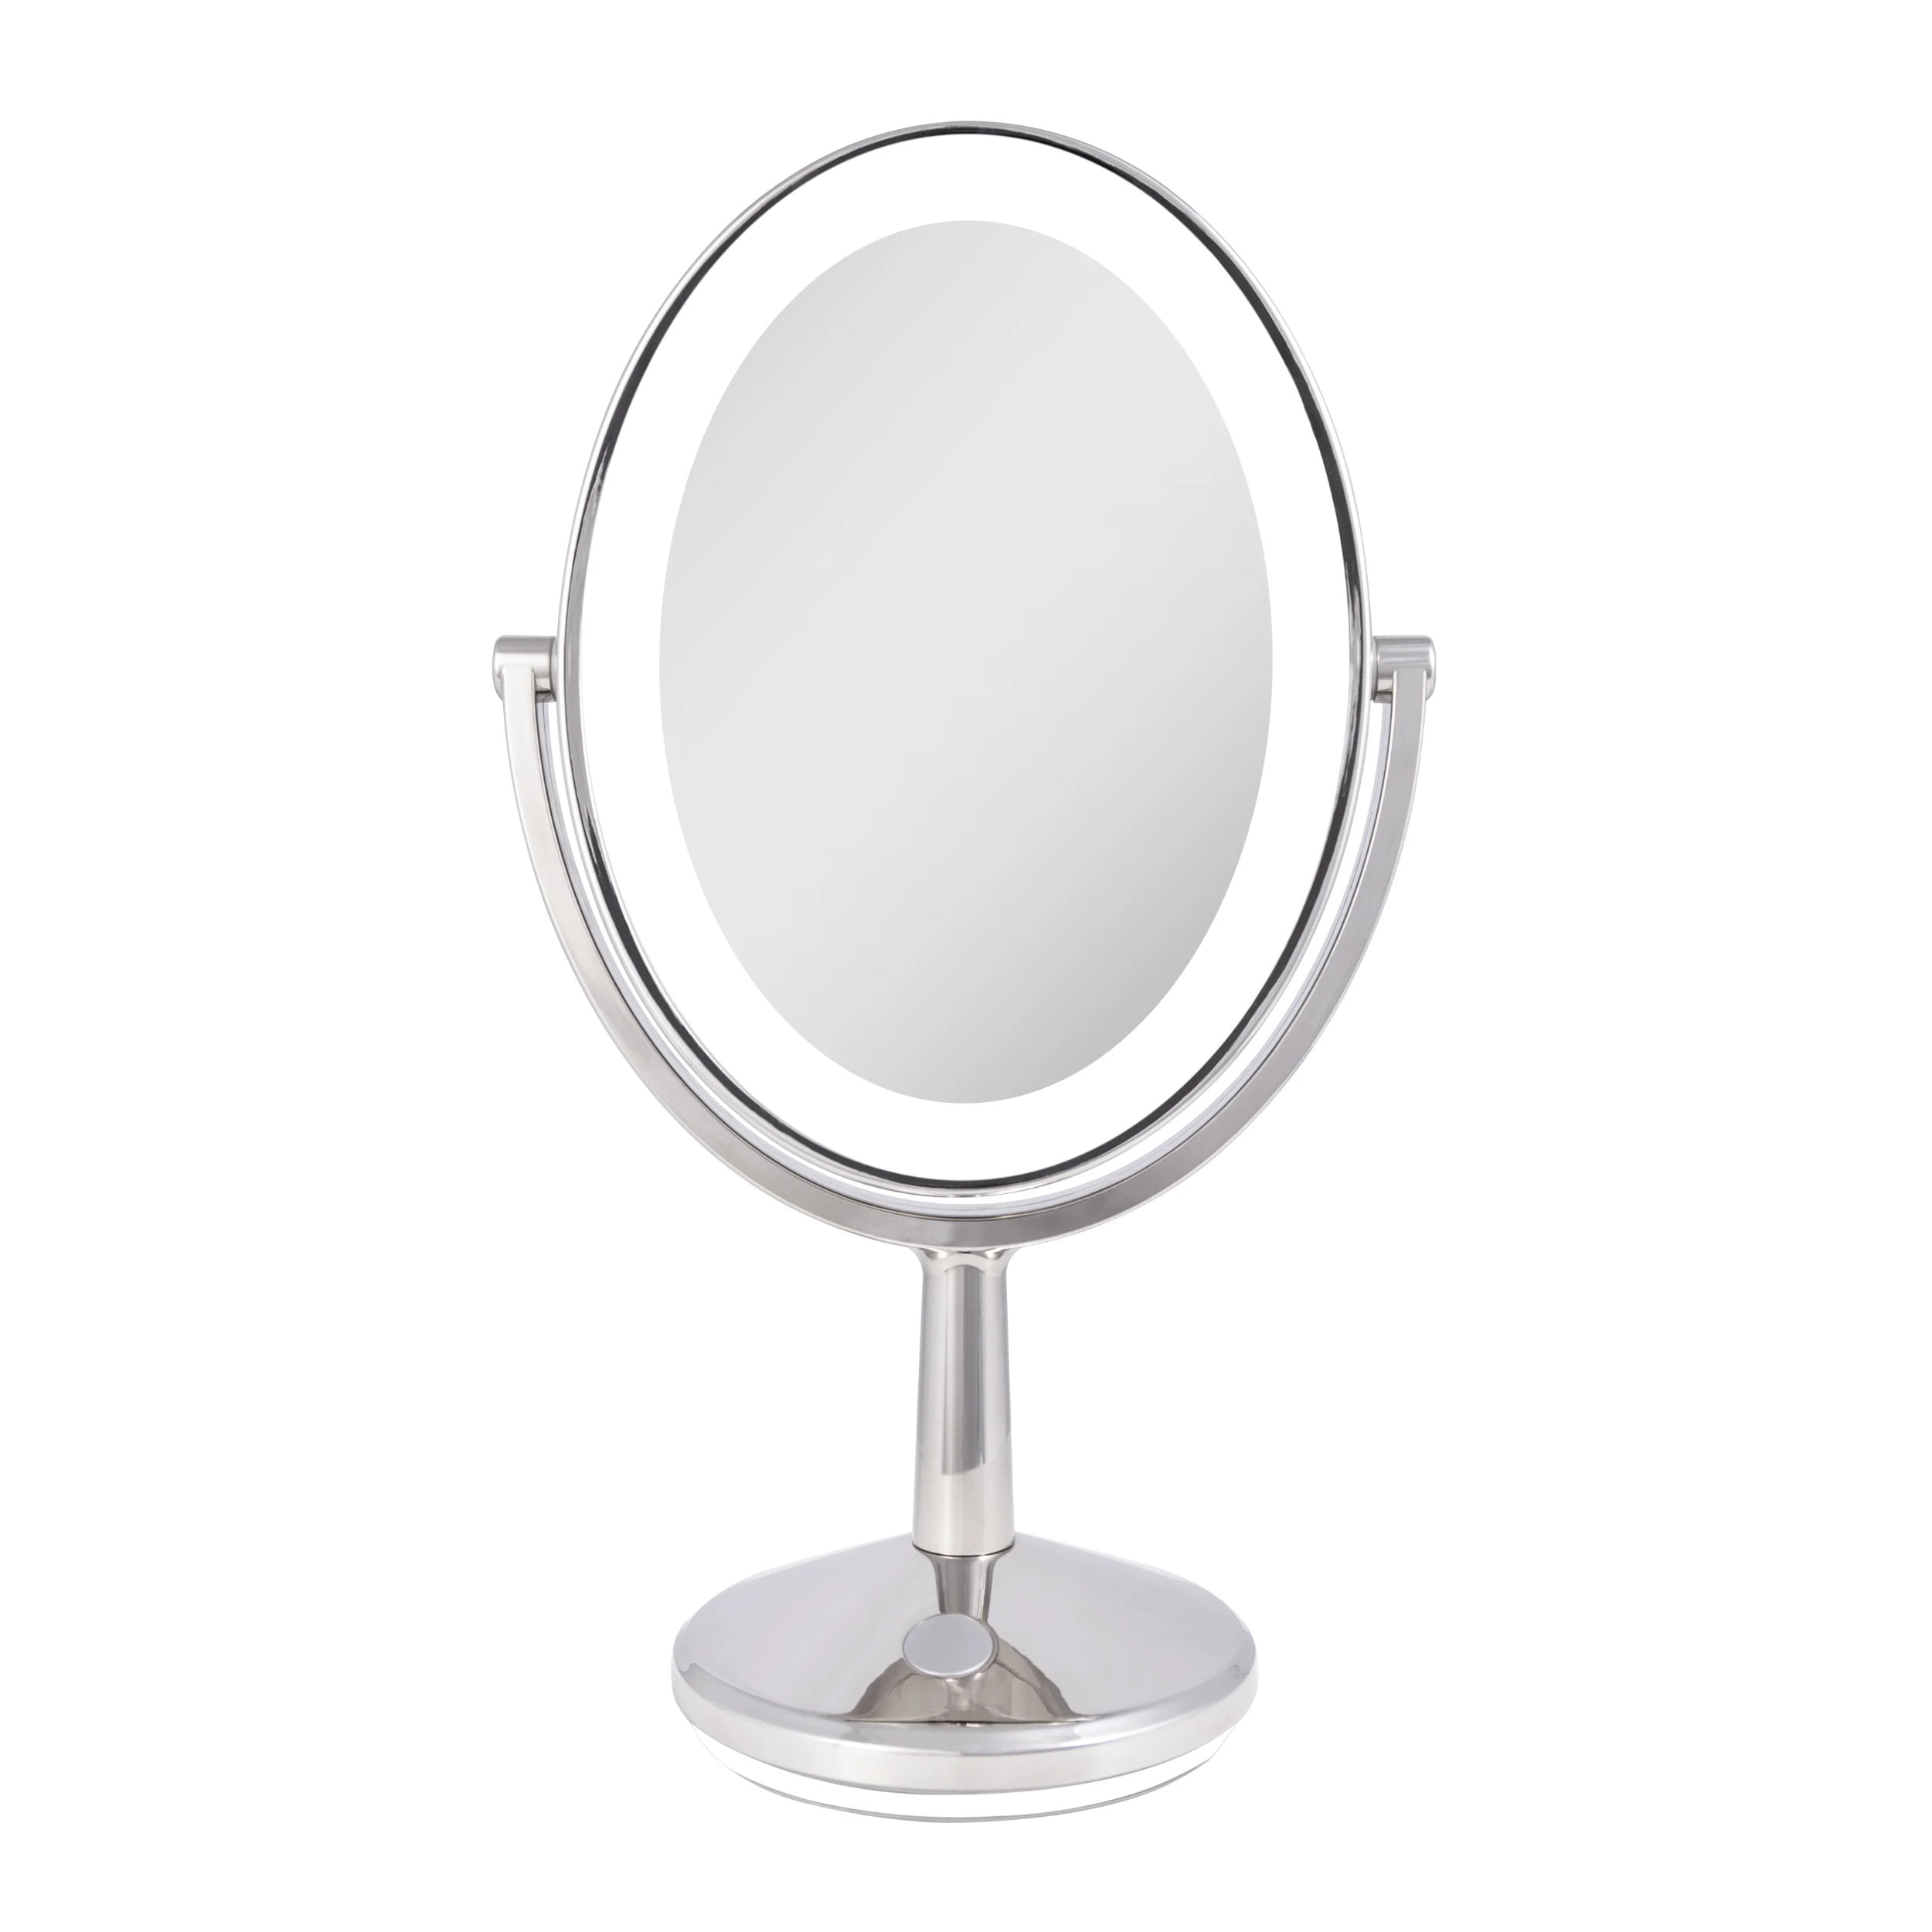 EZVALO LED Makeup Mirror Light Dimmable Vanity Light for Dressing